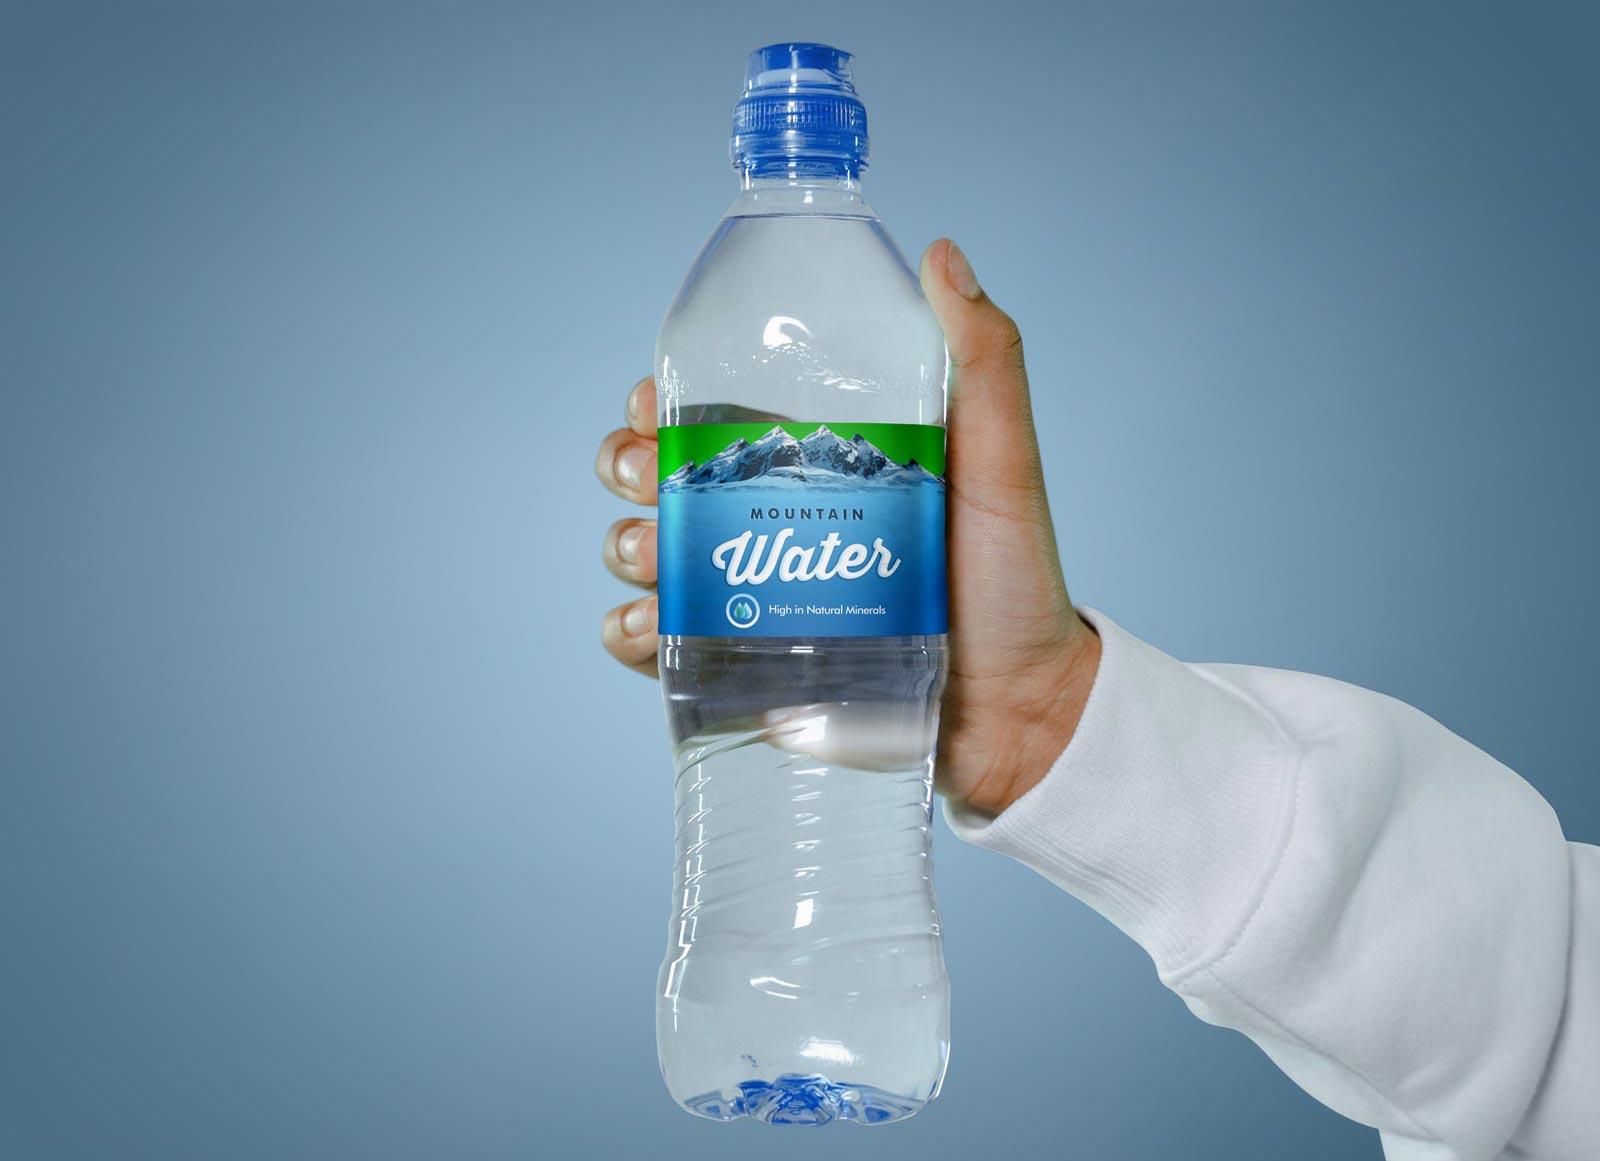 Hands sosteniendo la maqueta de etiquetas de botella de agua